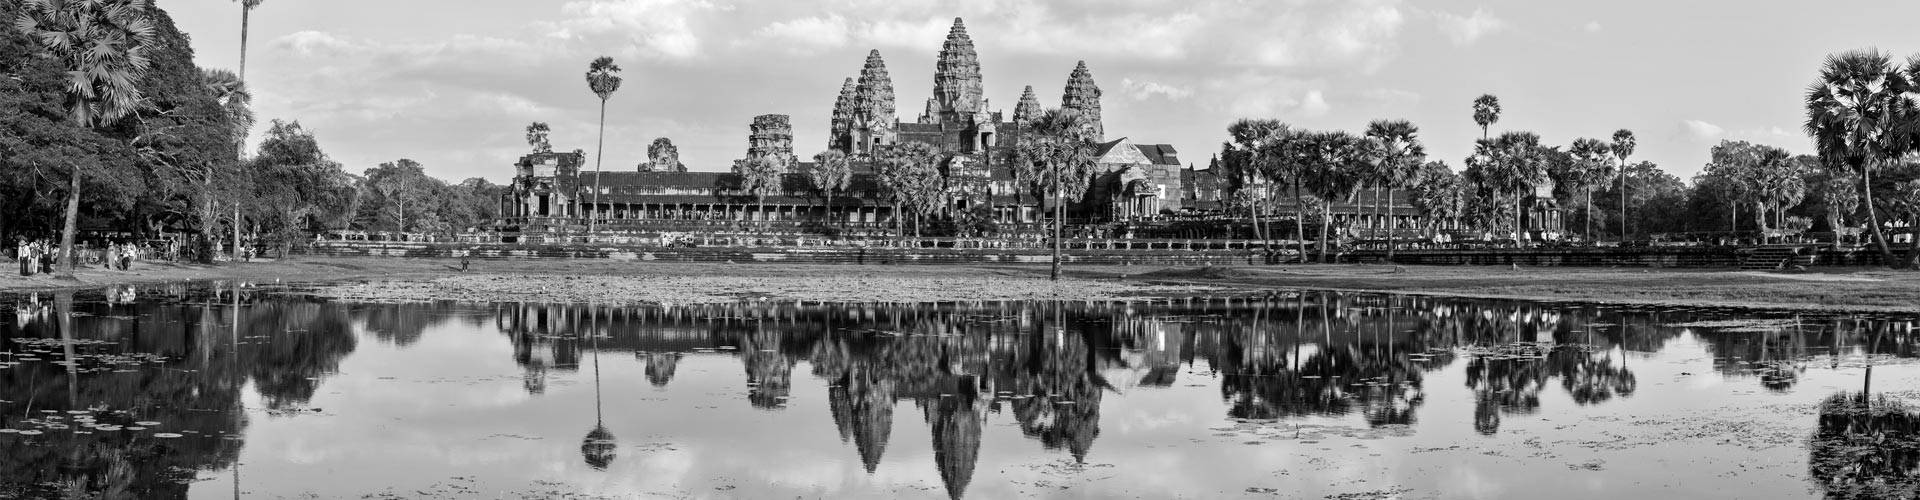 Cambodia Travel Advice